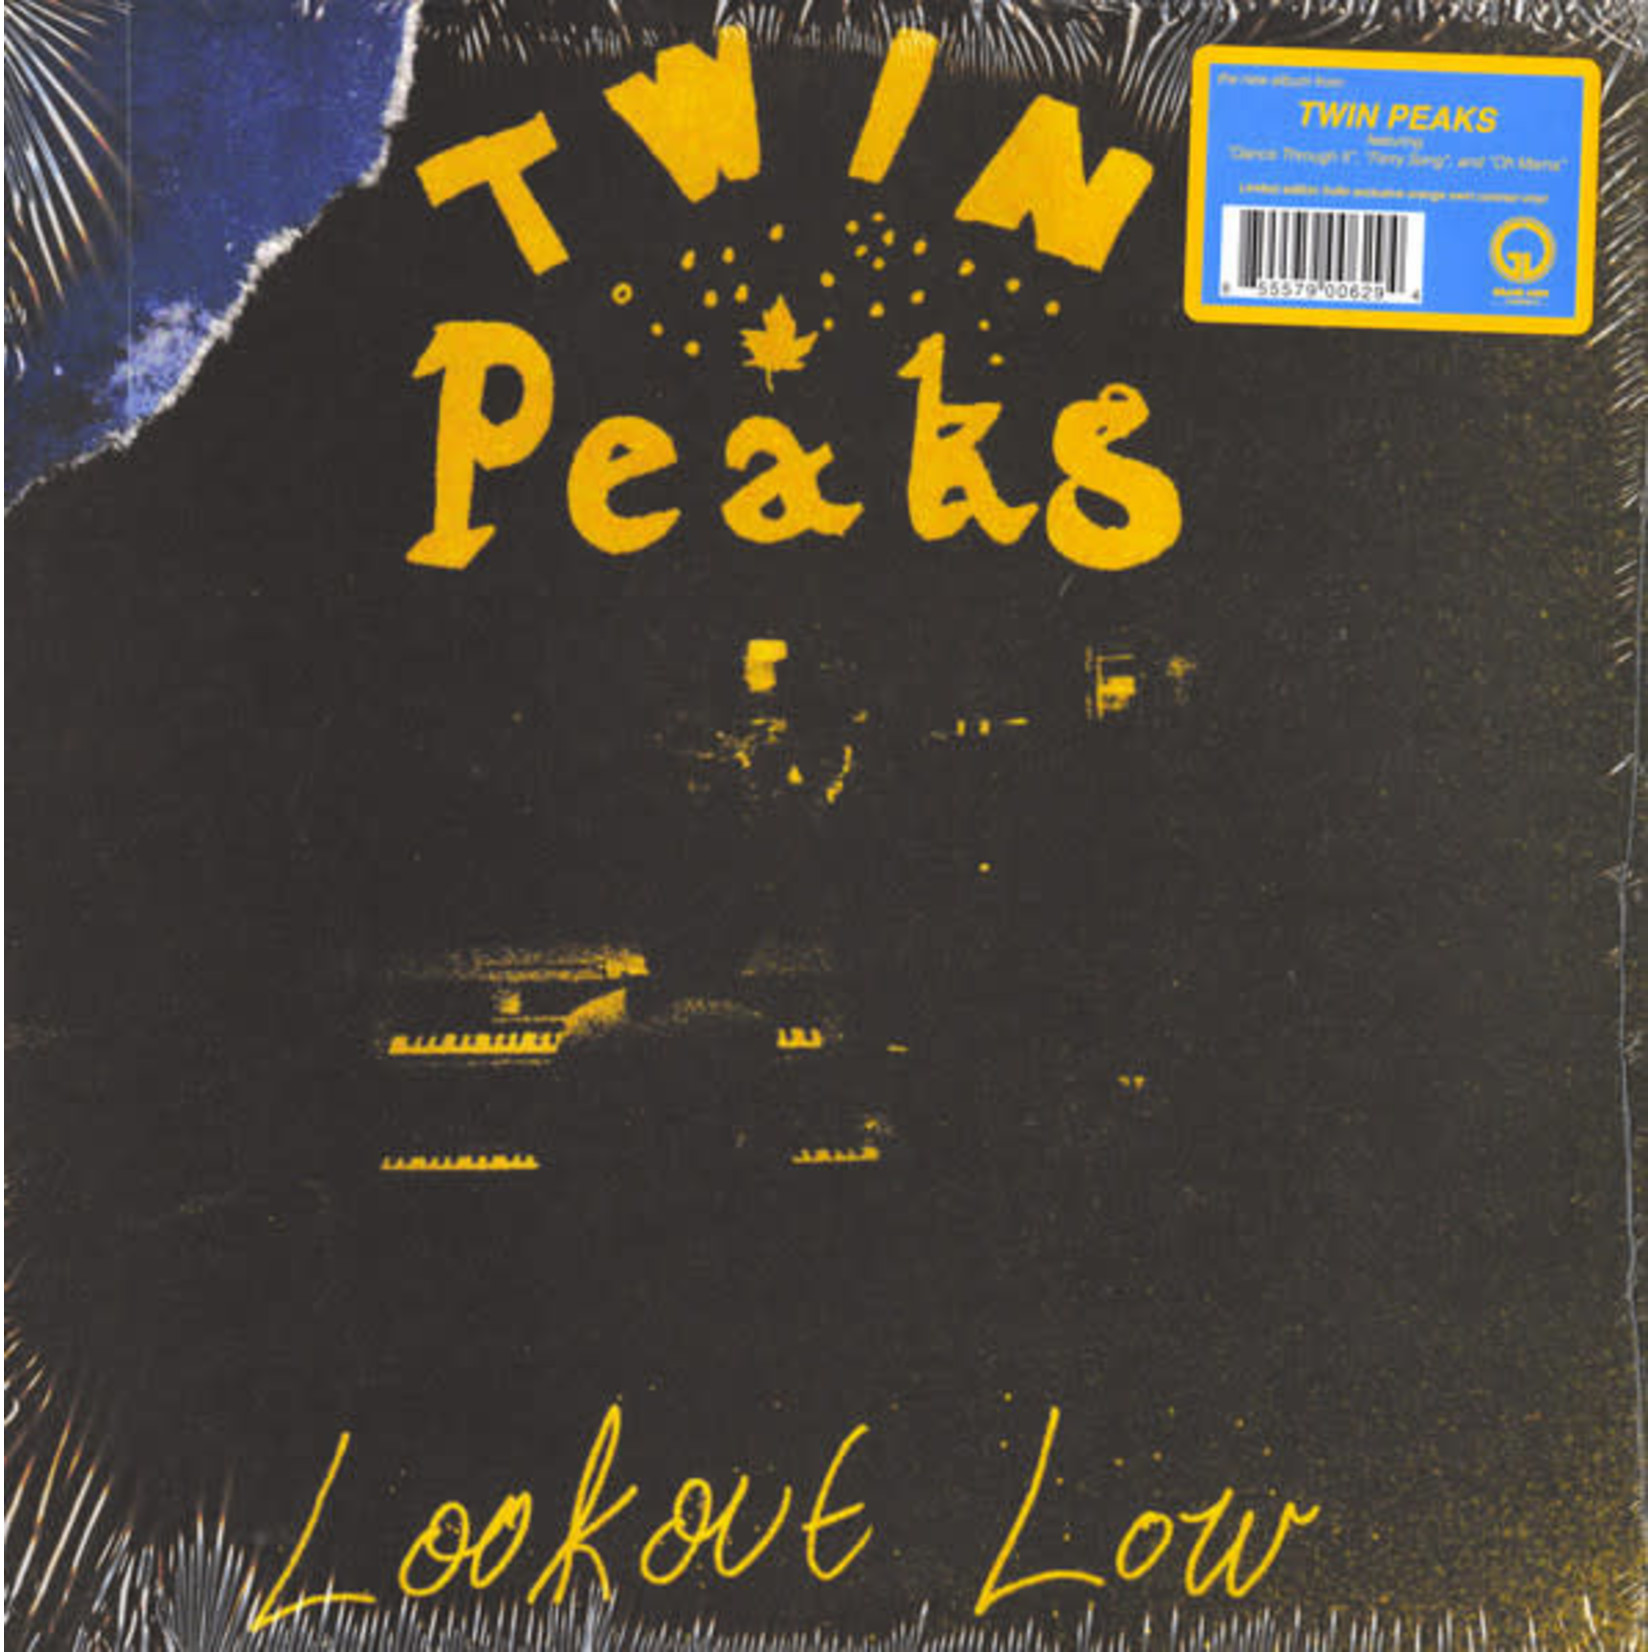 Grand Jury Twin Peaks - Lookout Low (LP) [Orange Swirl]